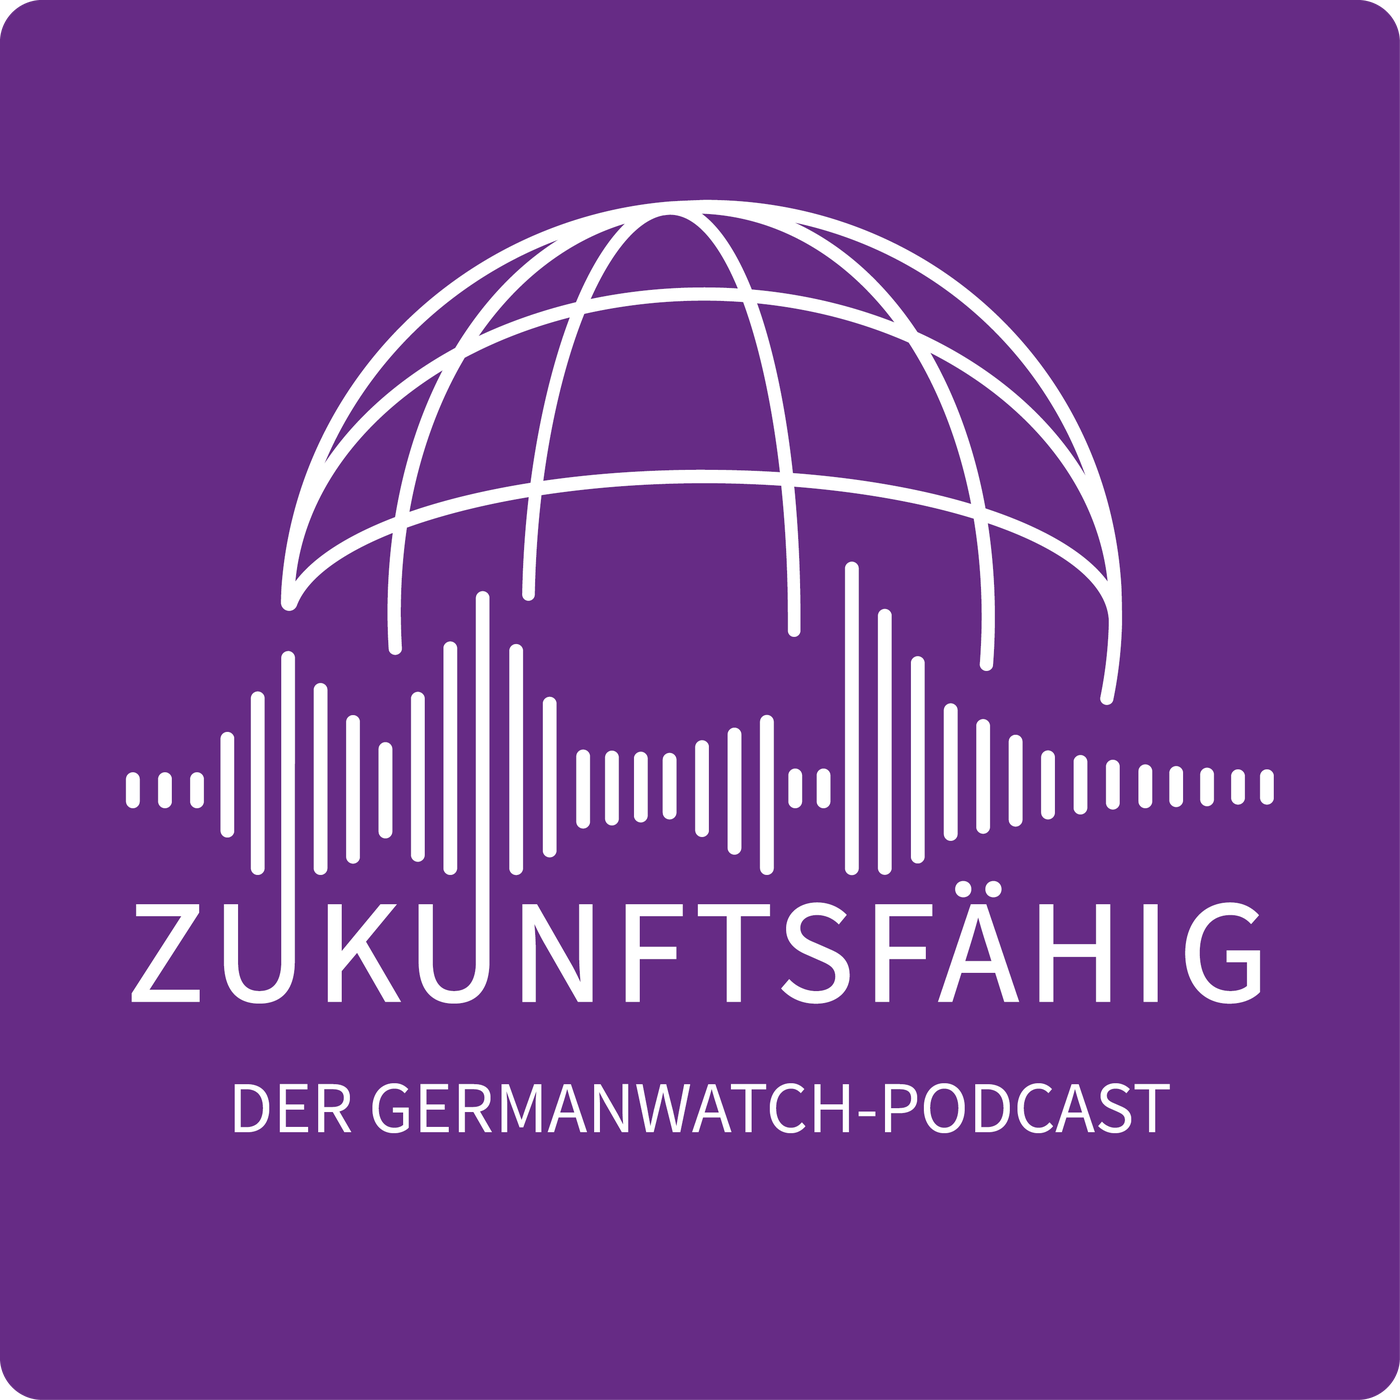 Zukunftsfähig - Der Germanwatch-Podcast für eine nachhaltige globale Gesellschaft